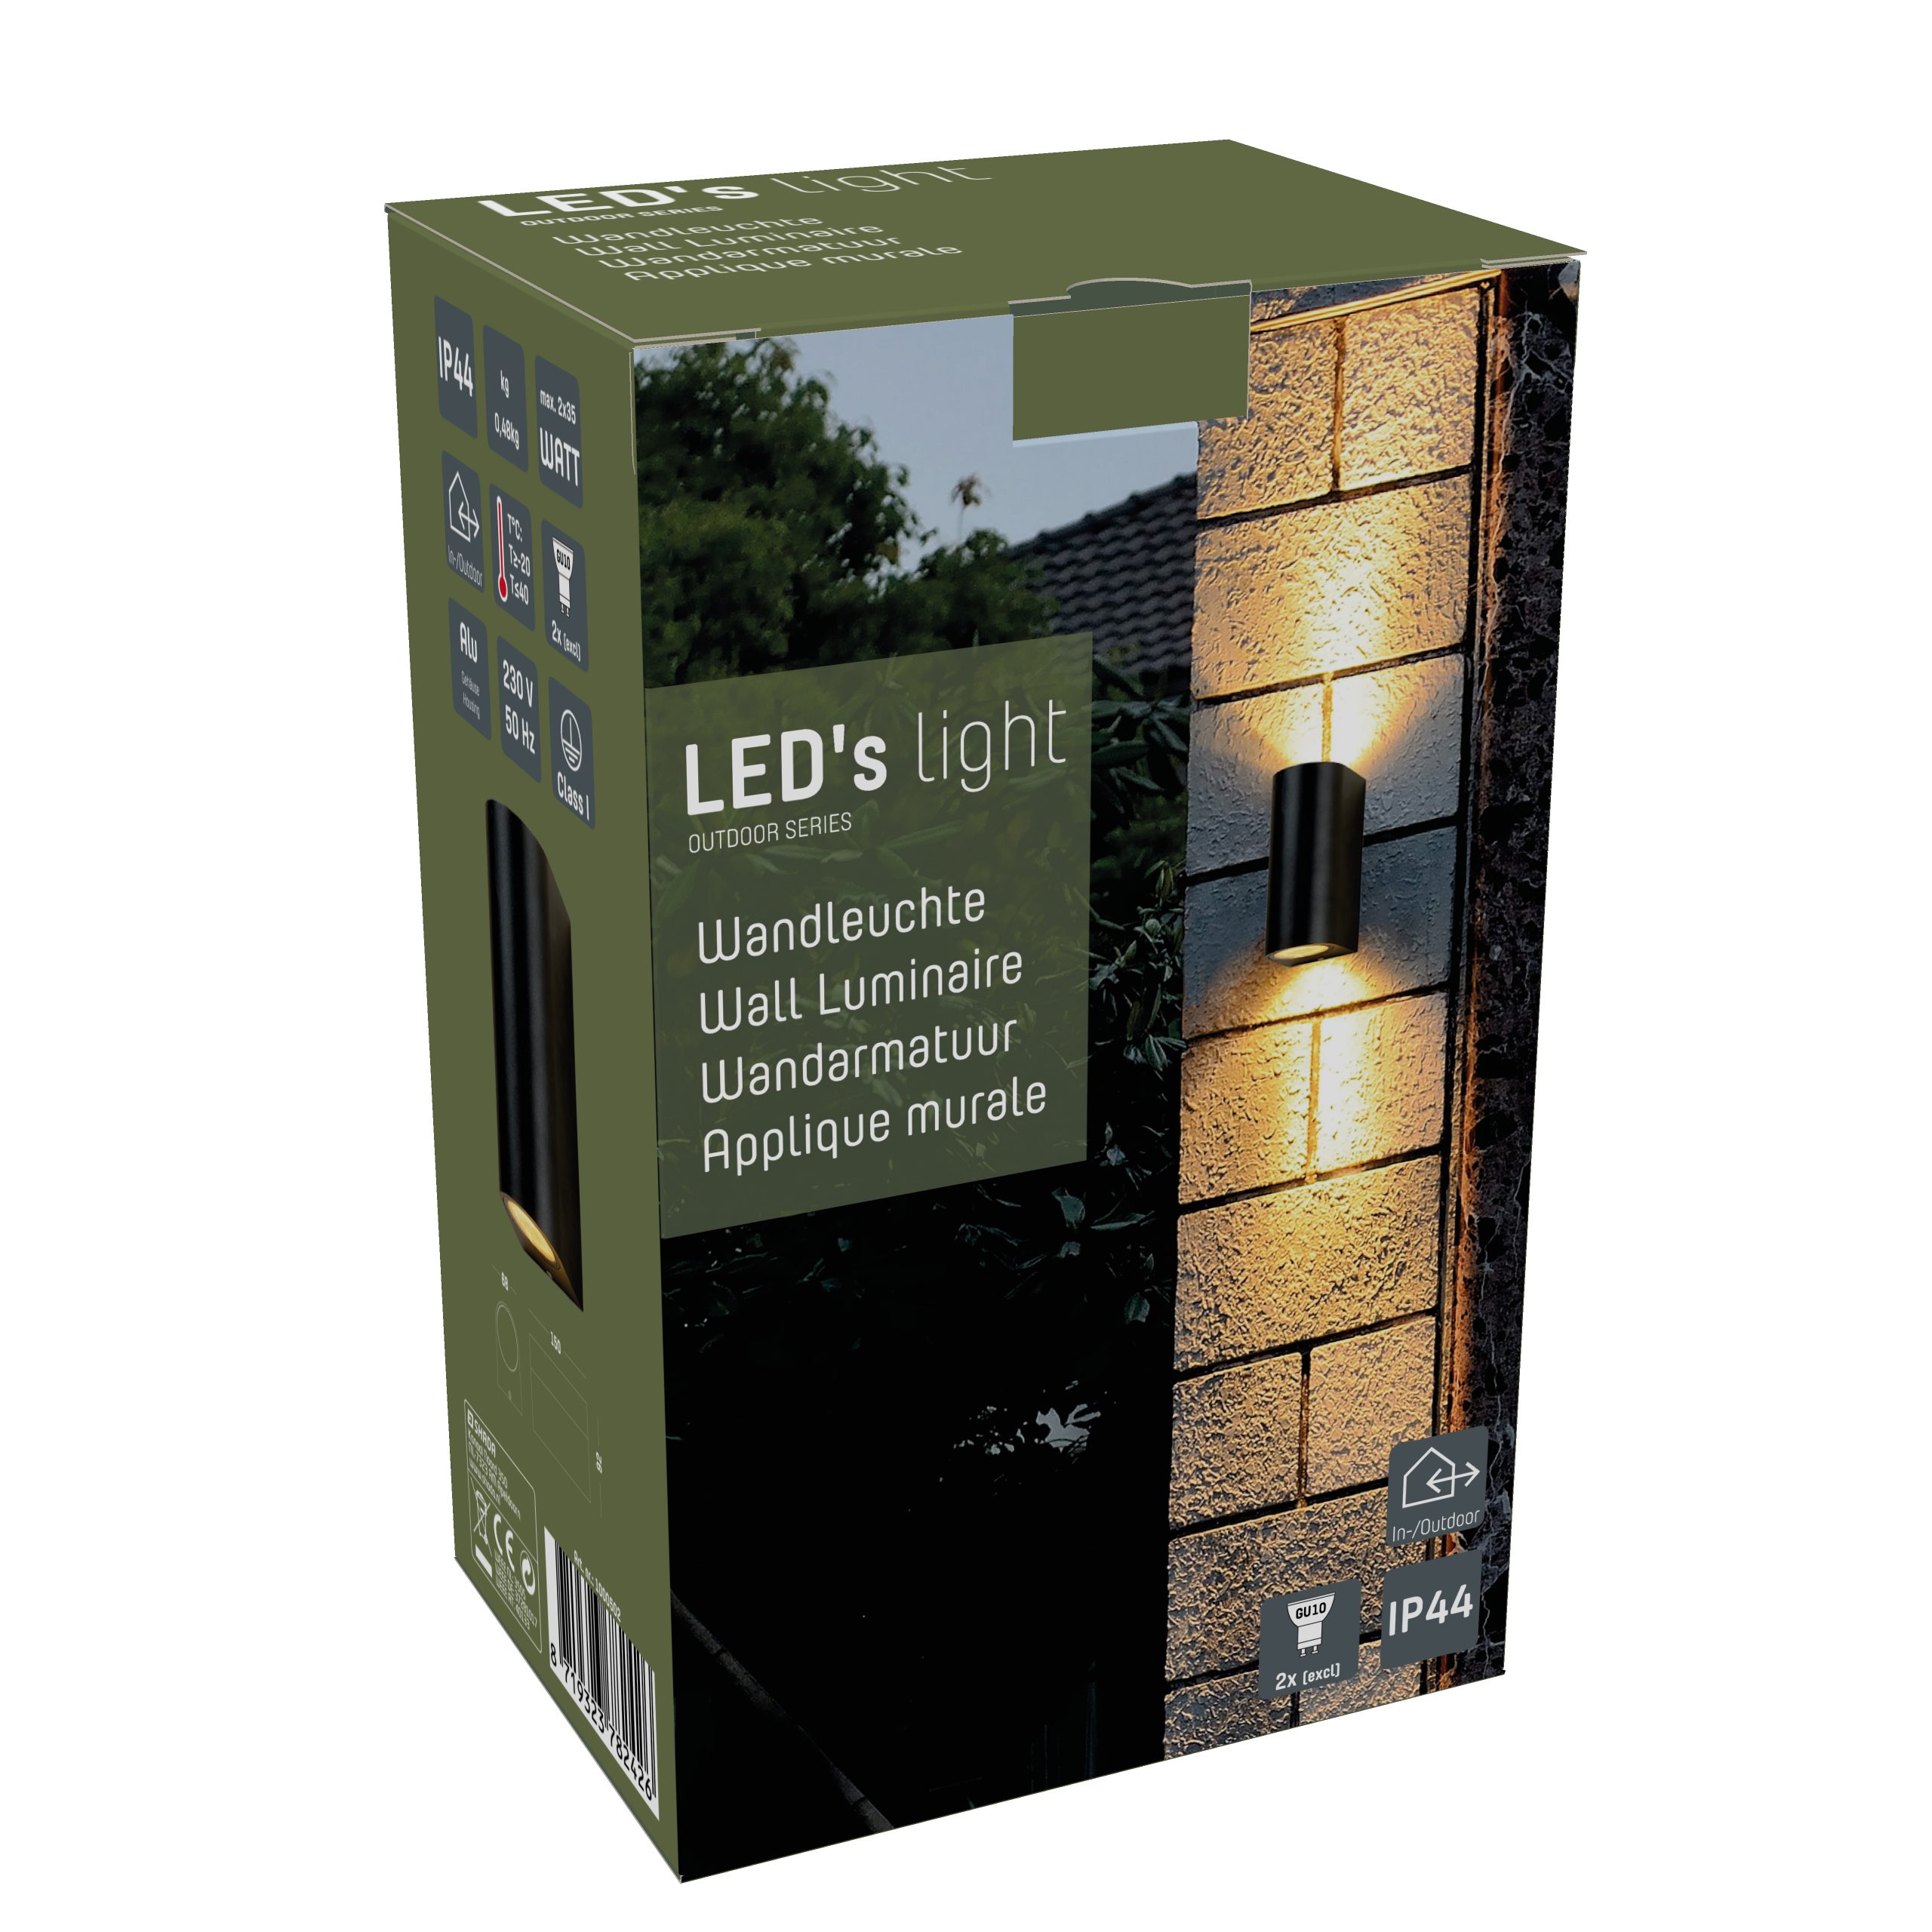 LED's light 2x LED, schwarz Außen-Wandleuchte GU10 und LED IP44 Halogen 35W 1000502 LED bis Außen-Wandleuchte, für